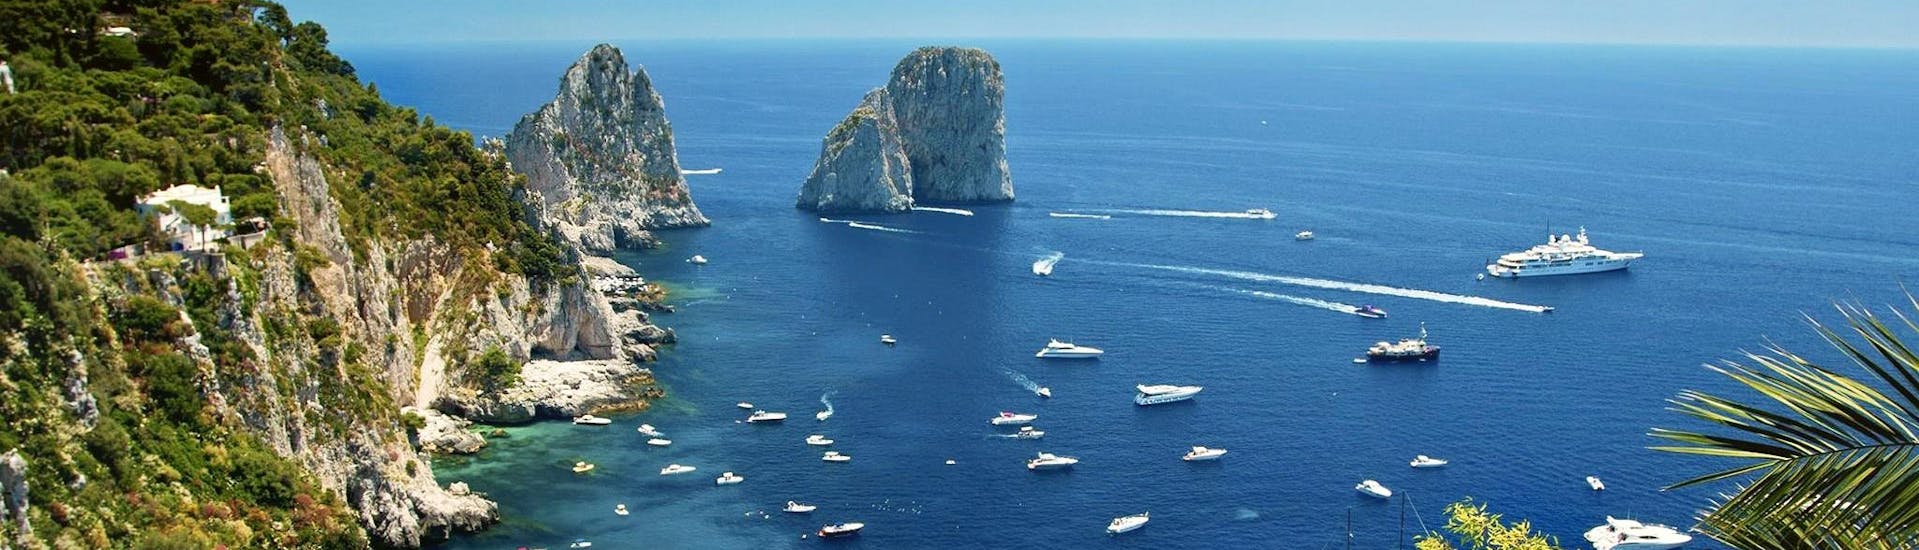 I Faraglioni di Capri si possono ammirare da vicino durante una delle nostre escursioni in barca.